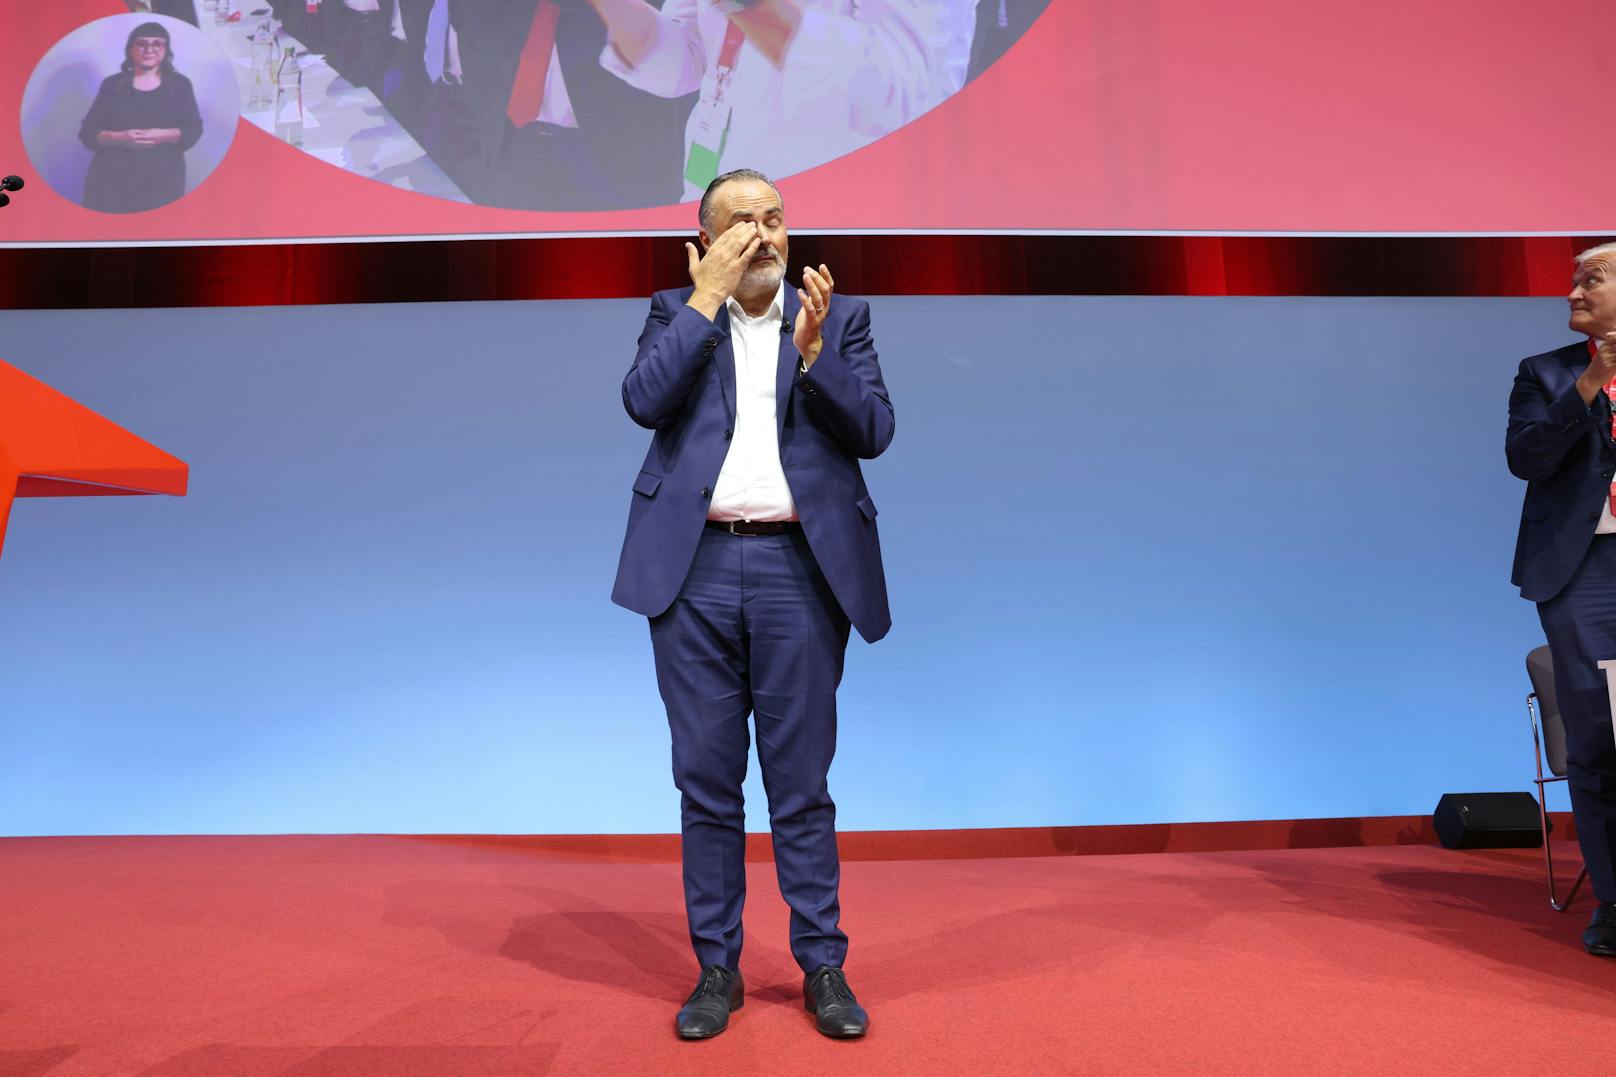 Für kurze Zeit erfüllte sich mit der Wahl zum SPÖ-Chef für Doskozil ein Lebenstraum.&nbsp;